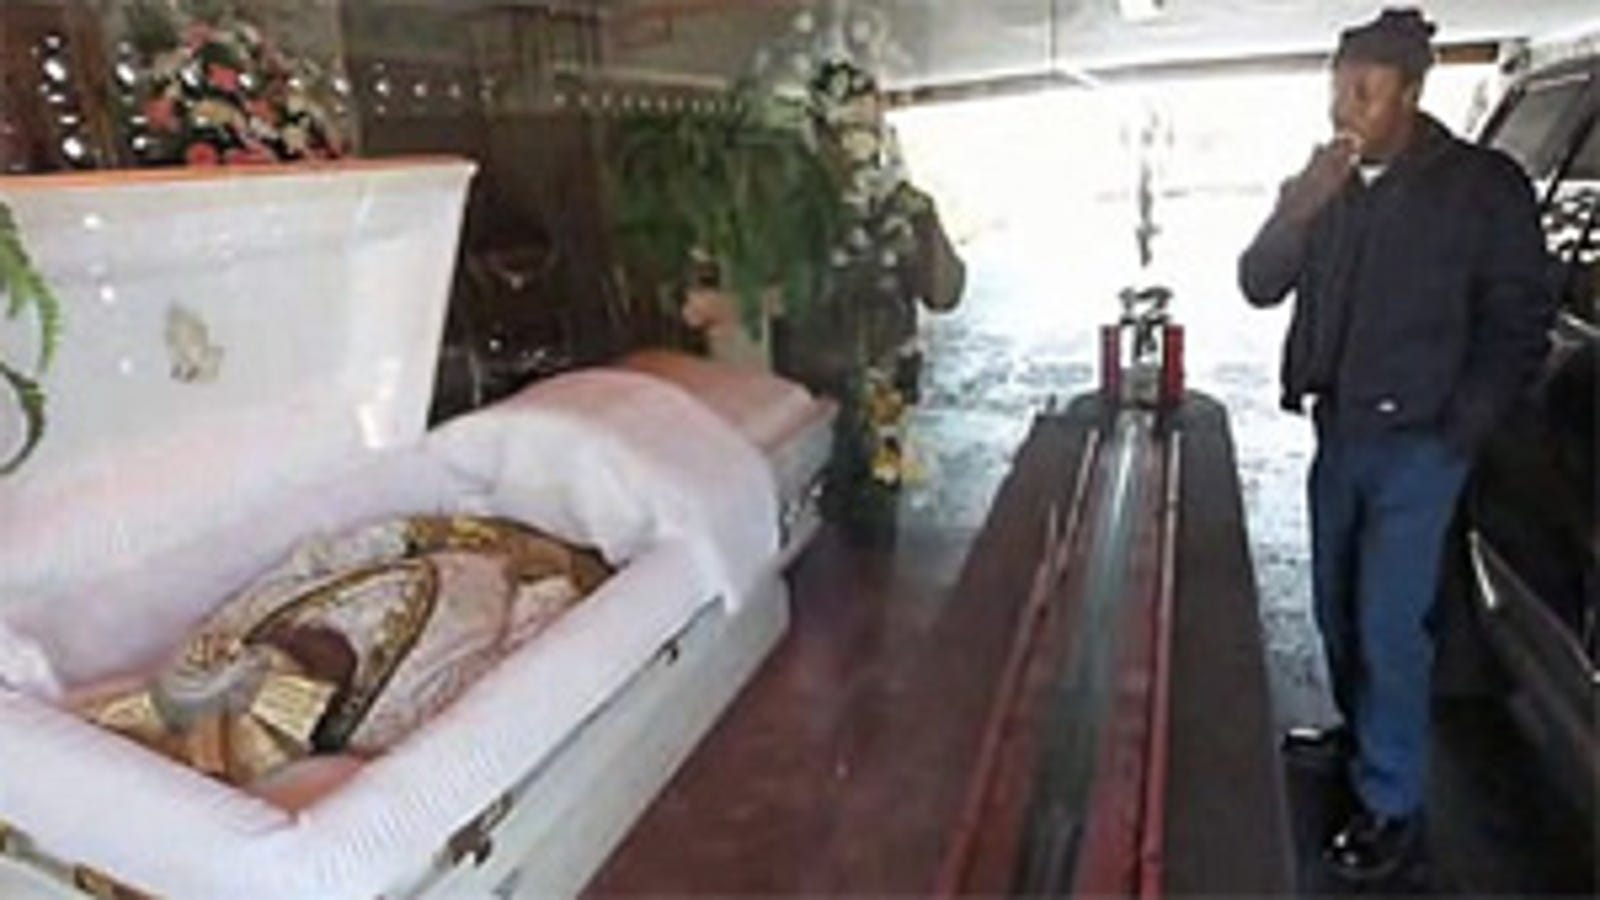 The Drive-Thru Funeral Home of Compton, California